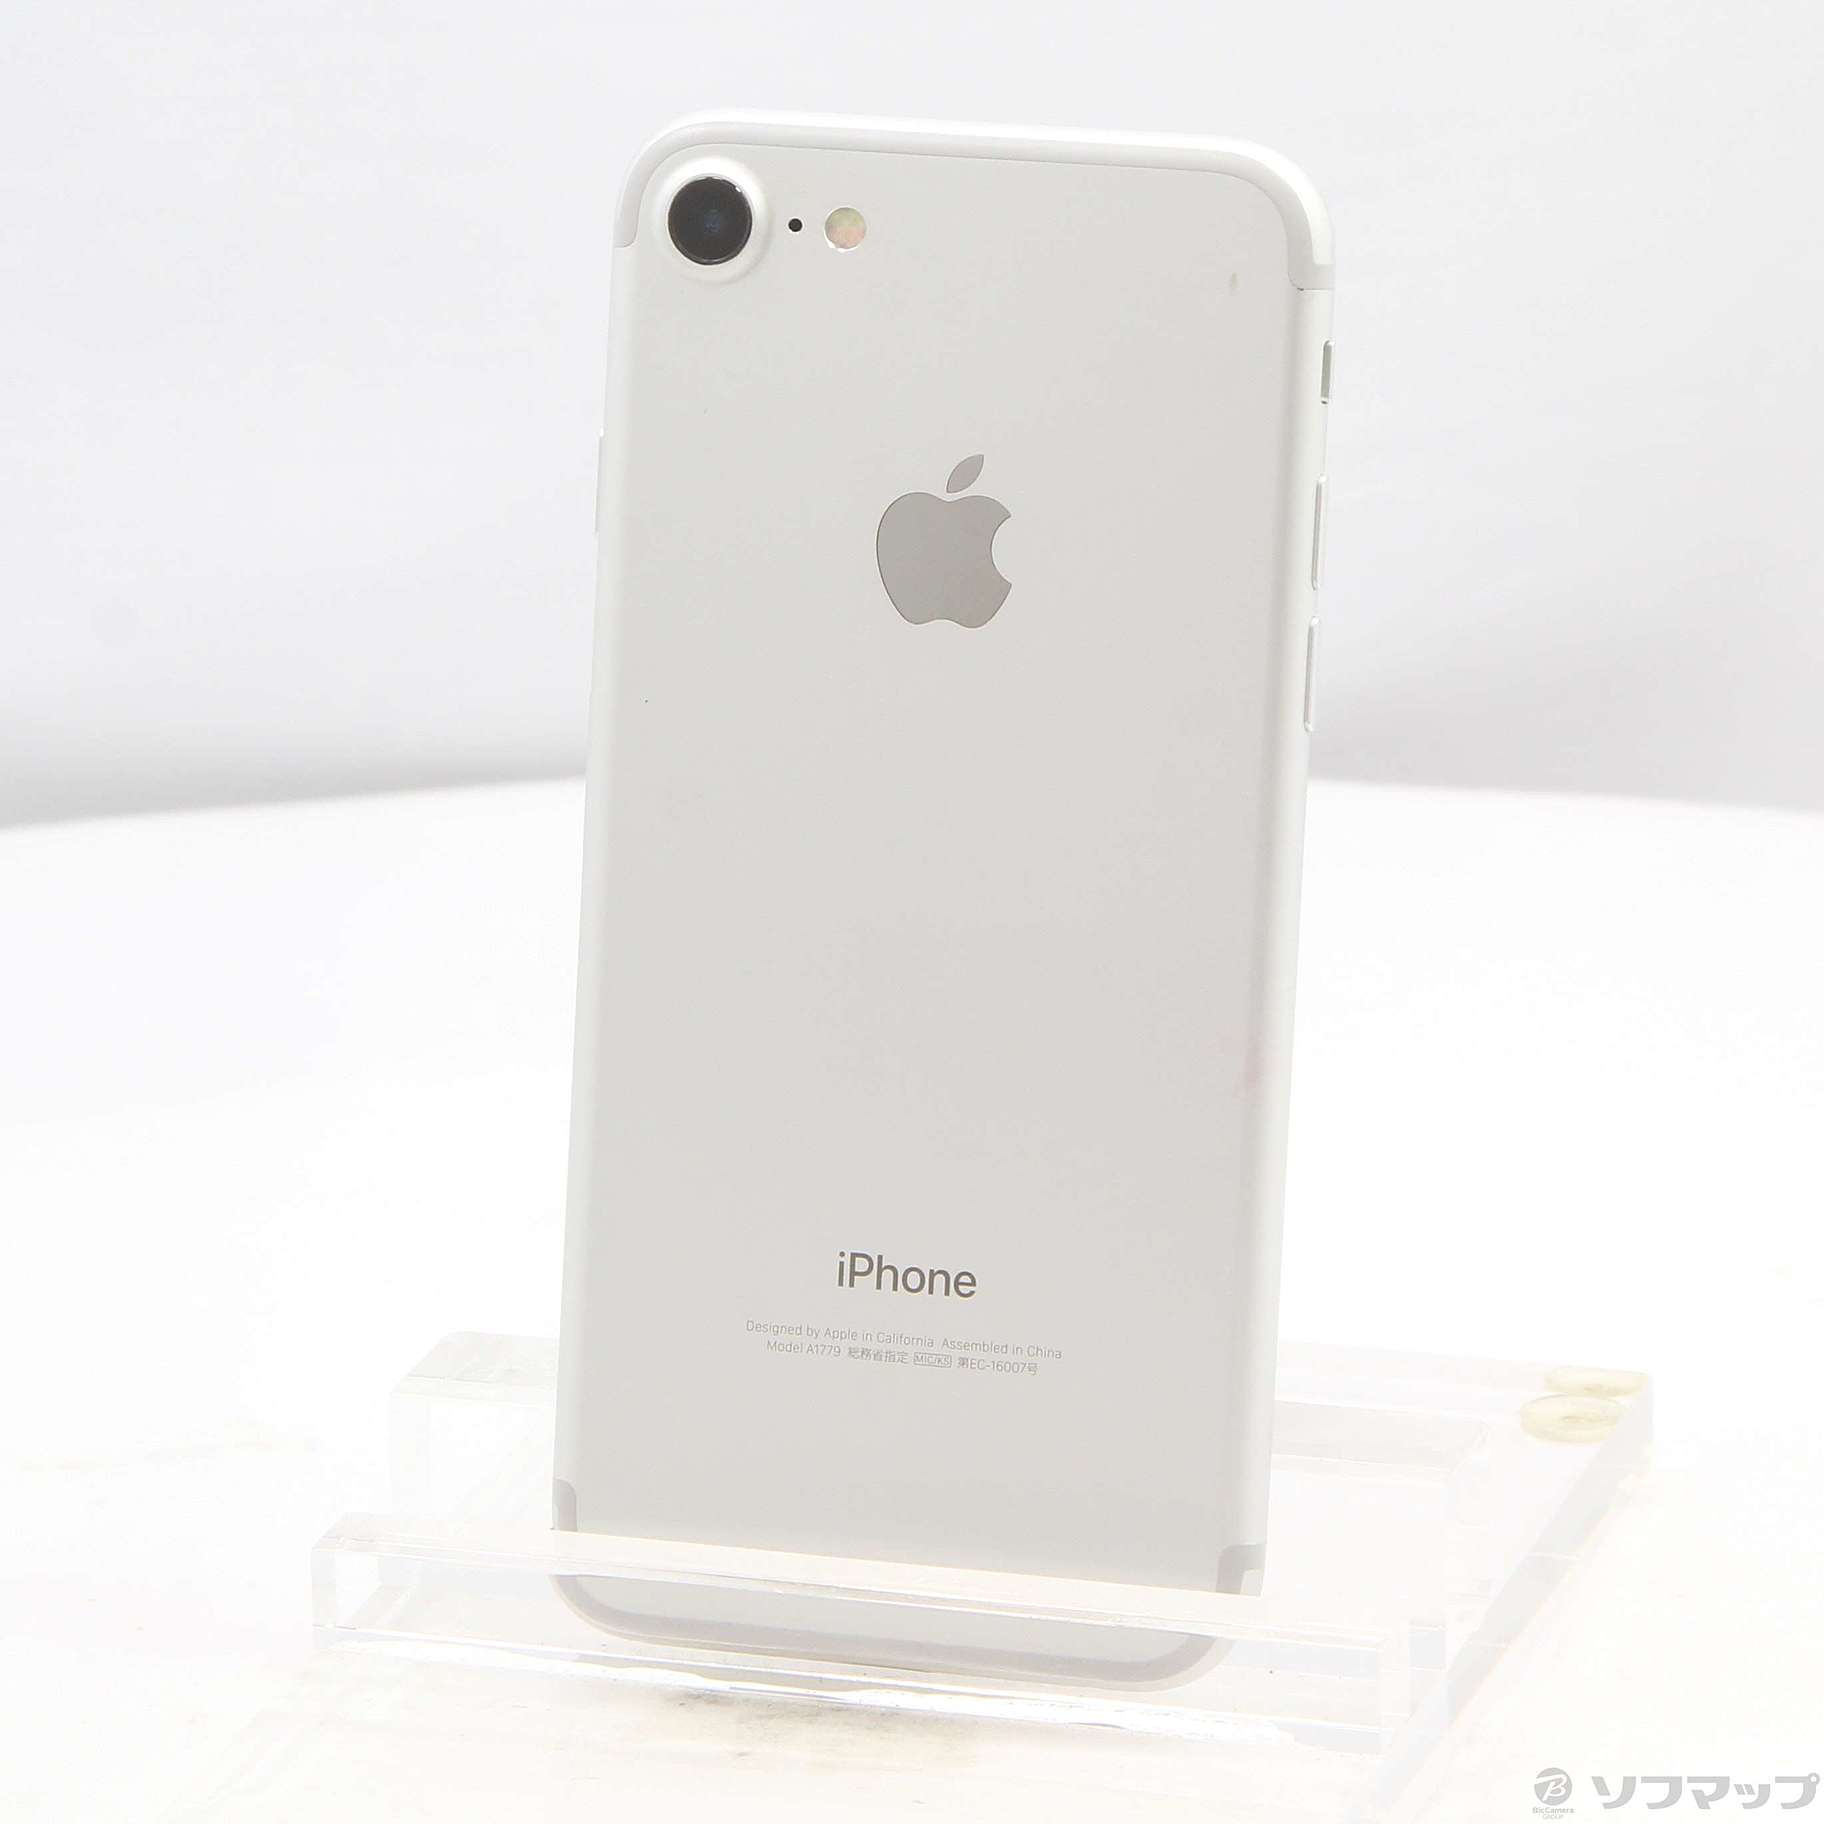 新品 iPhone 7 32G ホワイト au www.krzysztofbialy.com